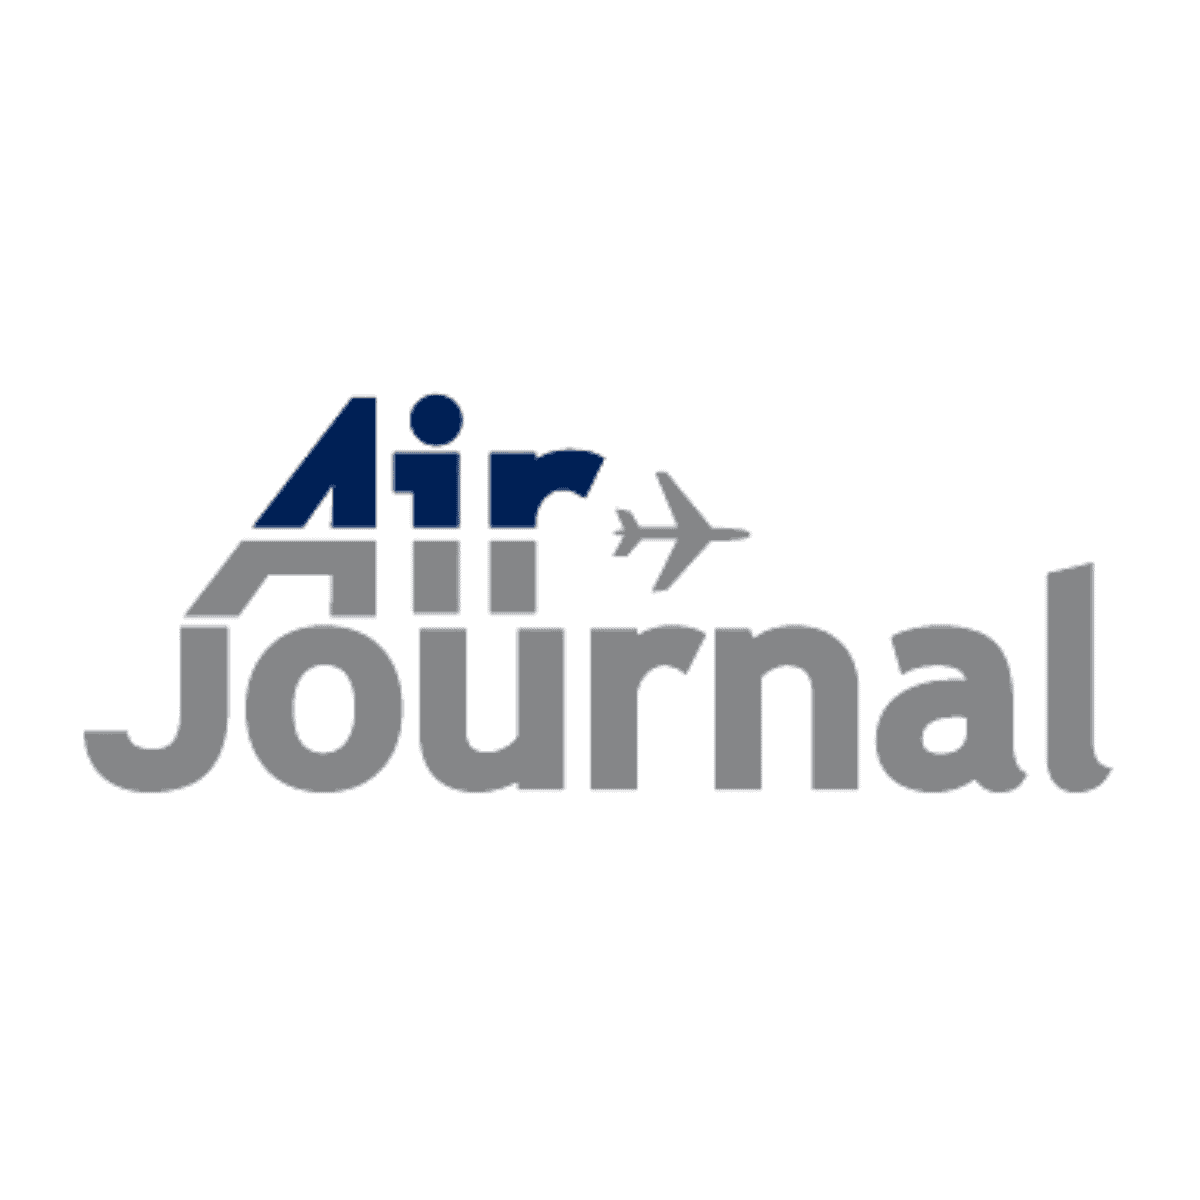 Peinture avions aéronefs rapide réparation aéronautique MRO CAMO, Air Journal écrit sur CorsoPatch Aircraft